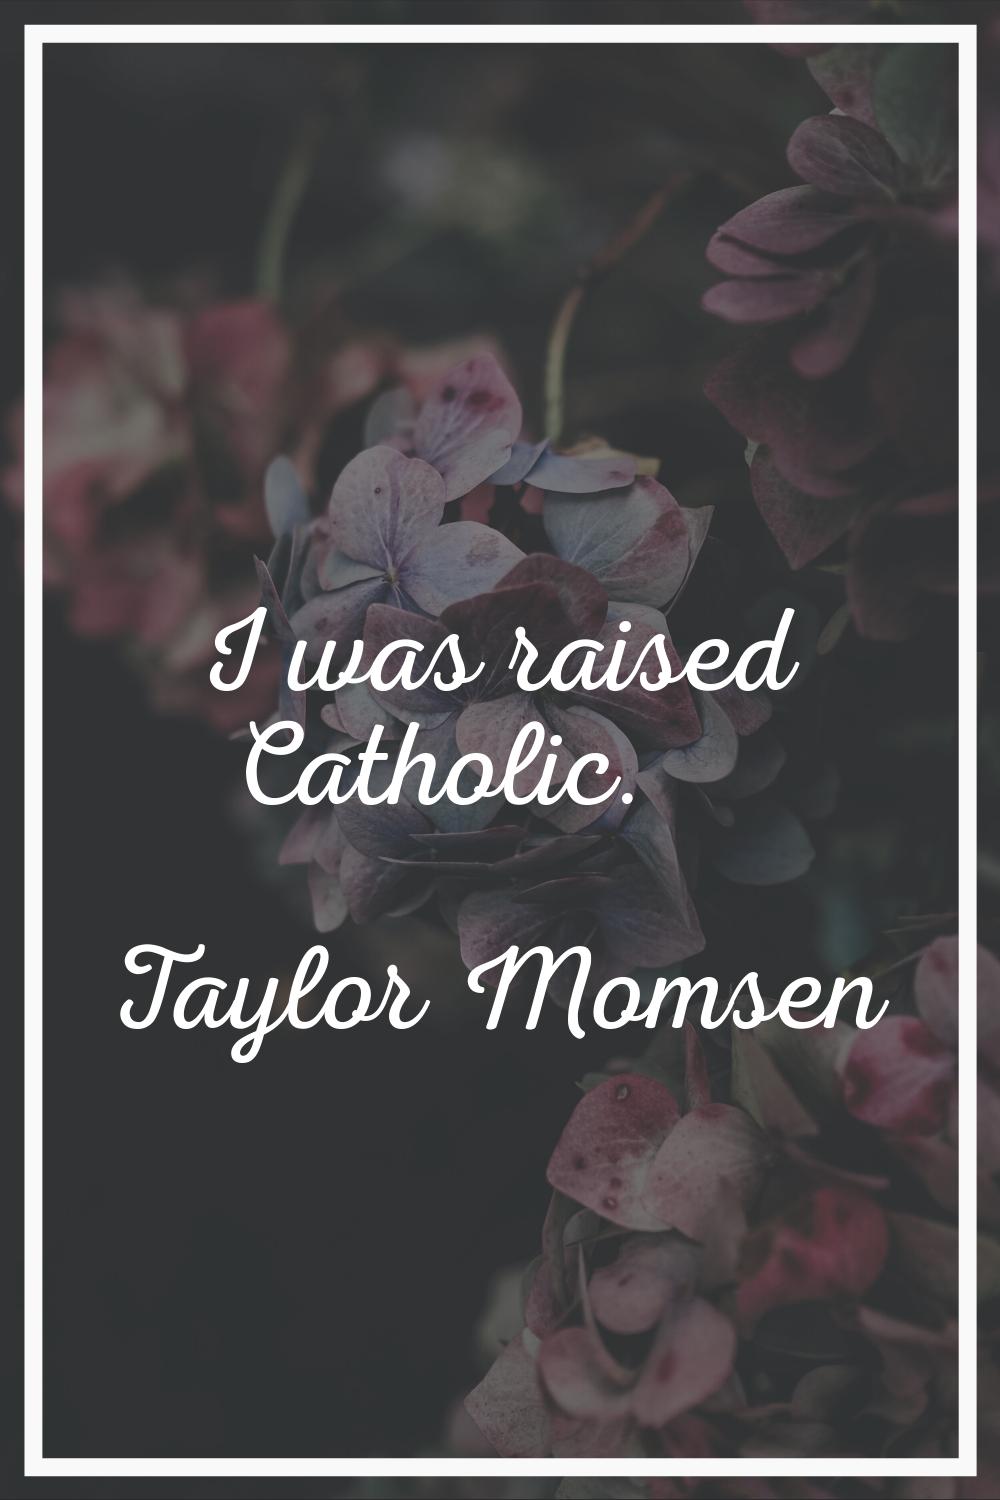 I was raised Catholic.